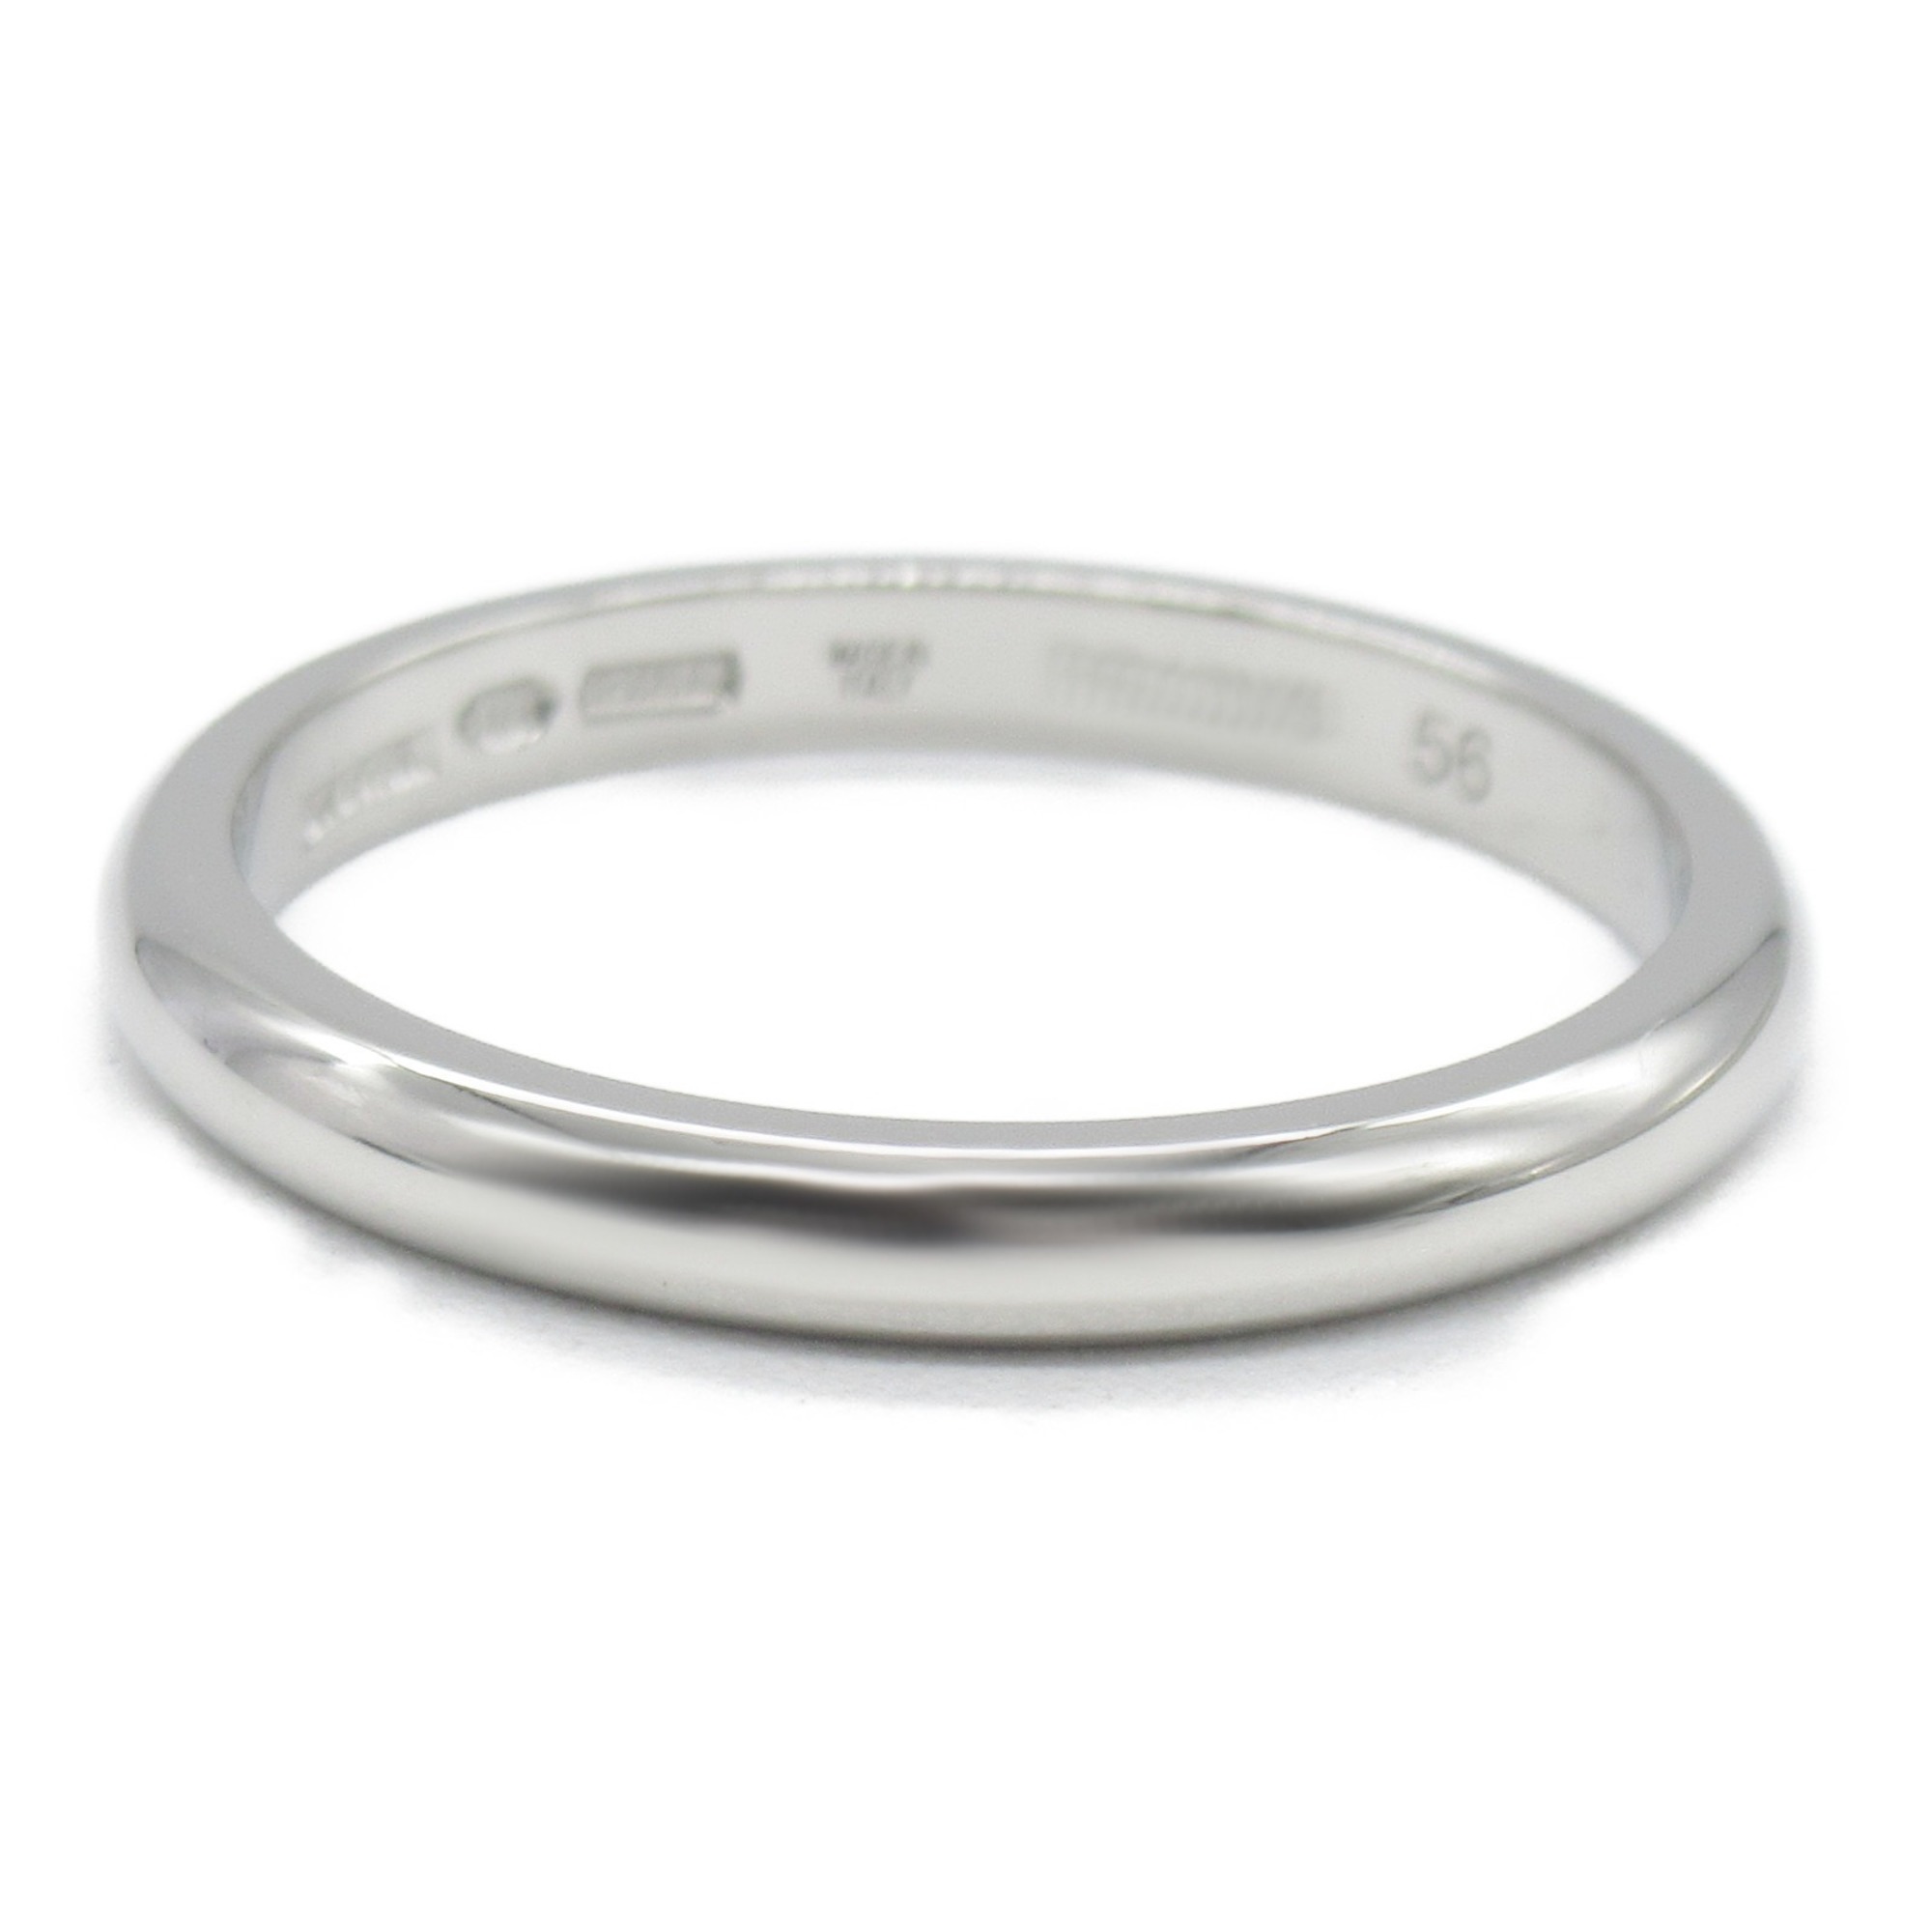 BVLGARI Fedi ring Ring Silver  Pt950Platinum Silver